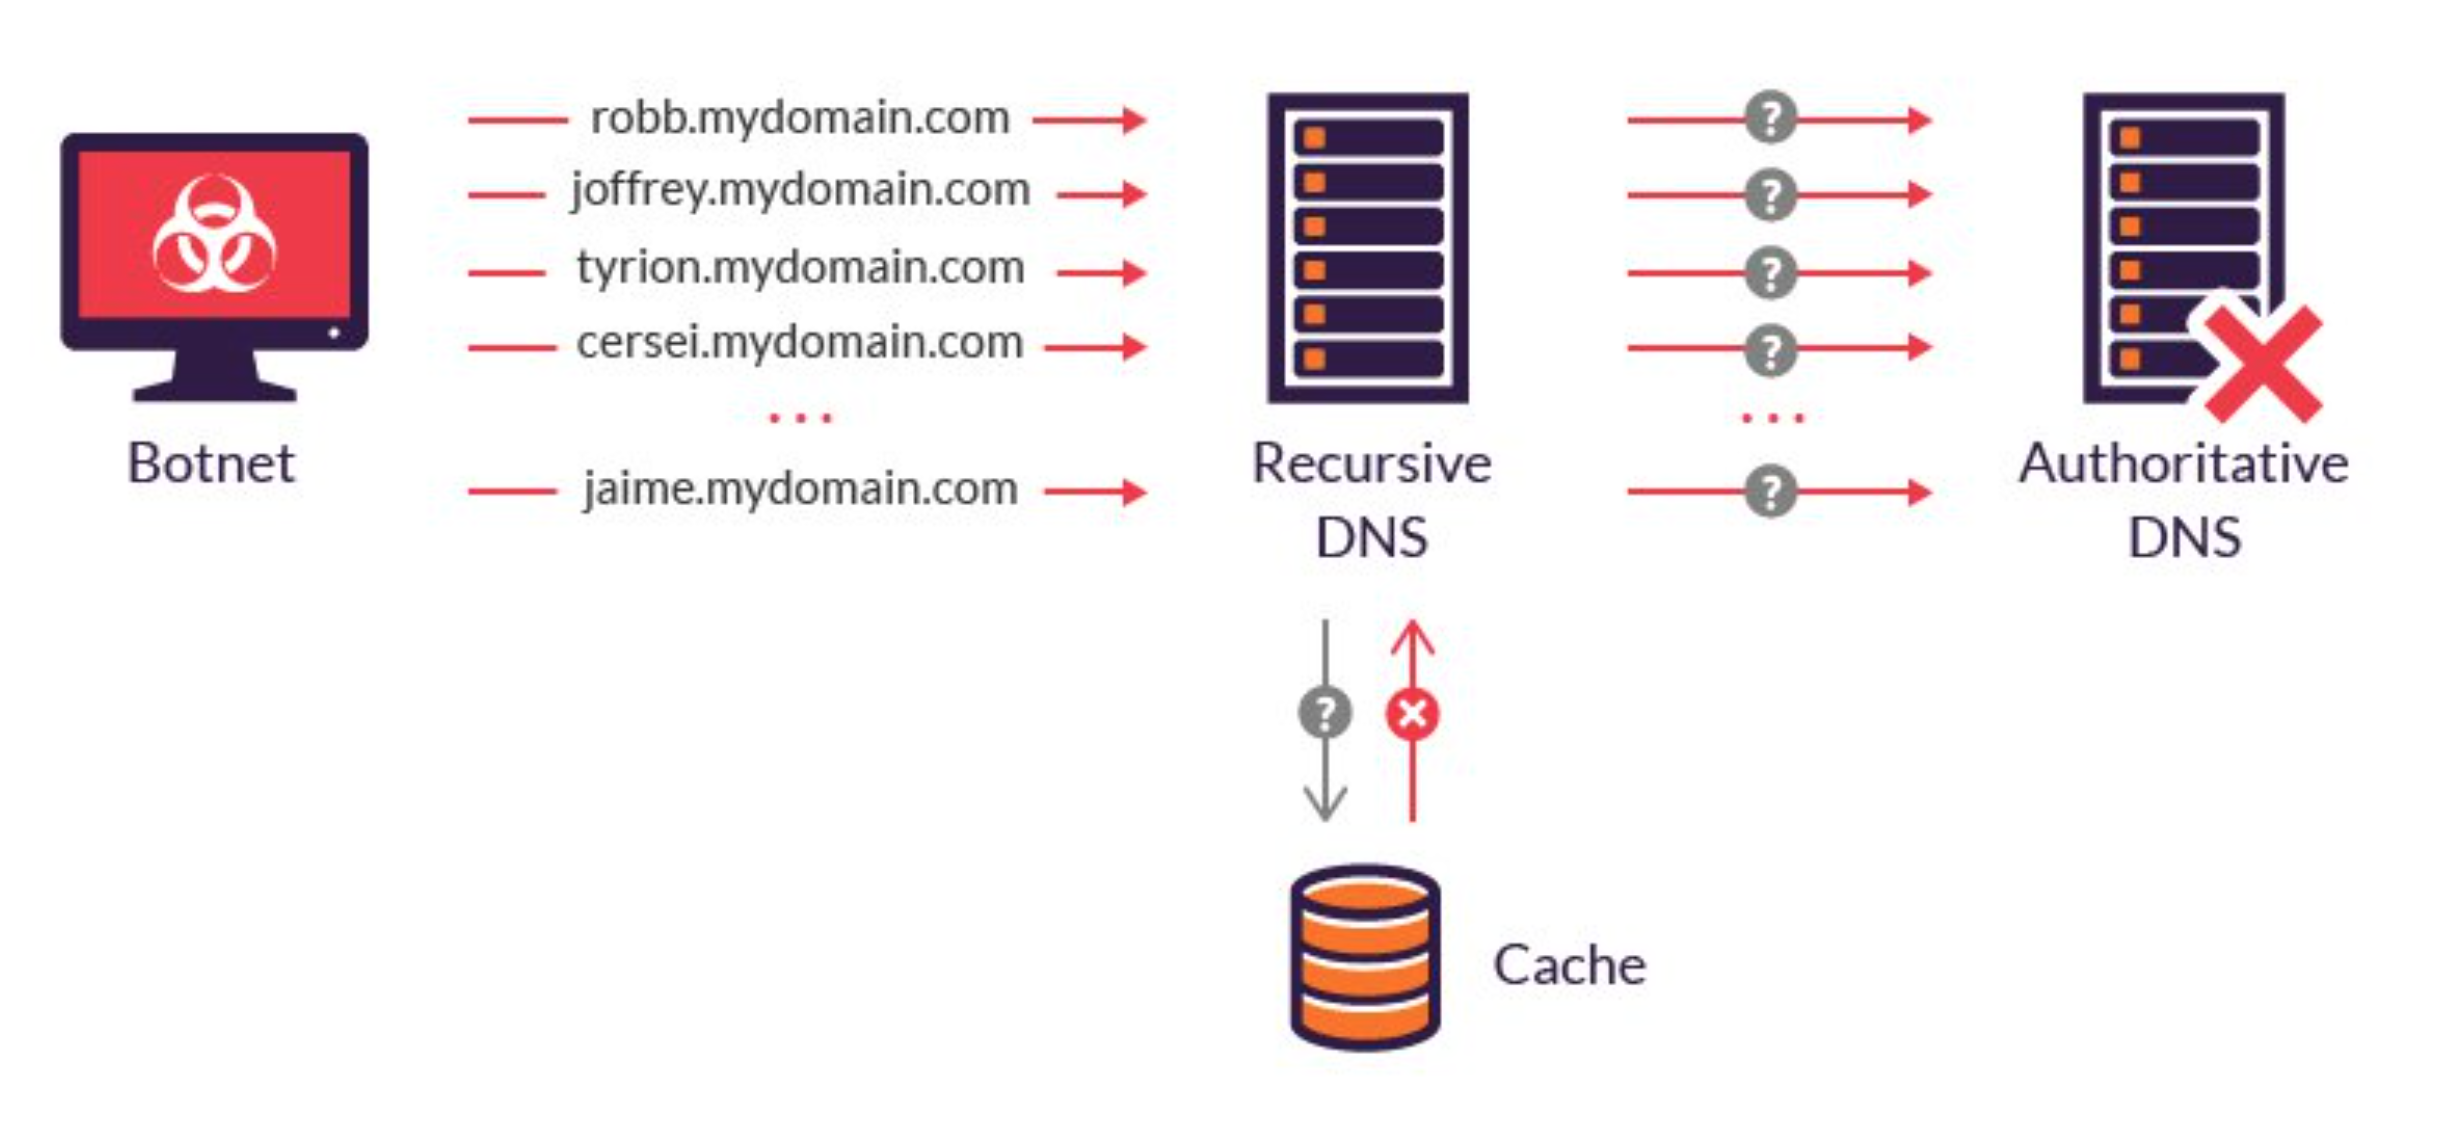 Dns nullsproxy com безопасен. ДНС флуд. Простой DNS флуд. DDOS-атаки на DNS. Атака с помощью рекурсивных DNS-запросов.